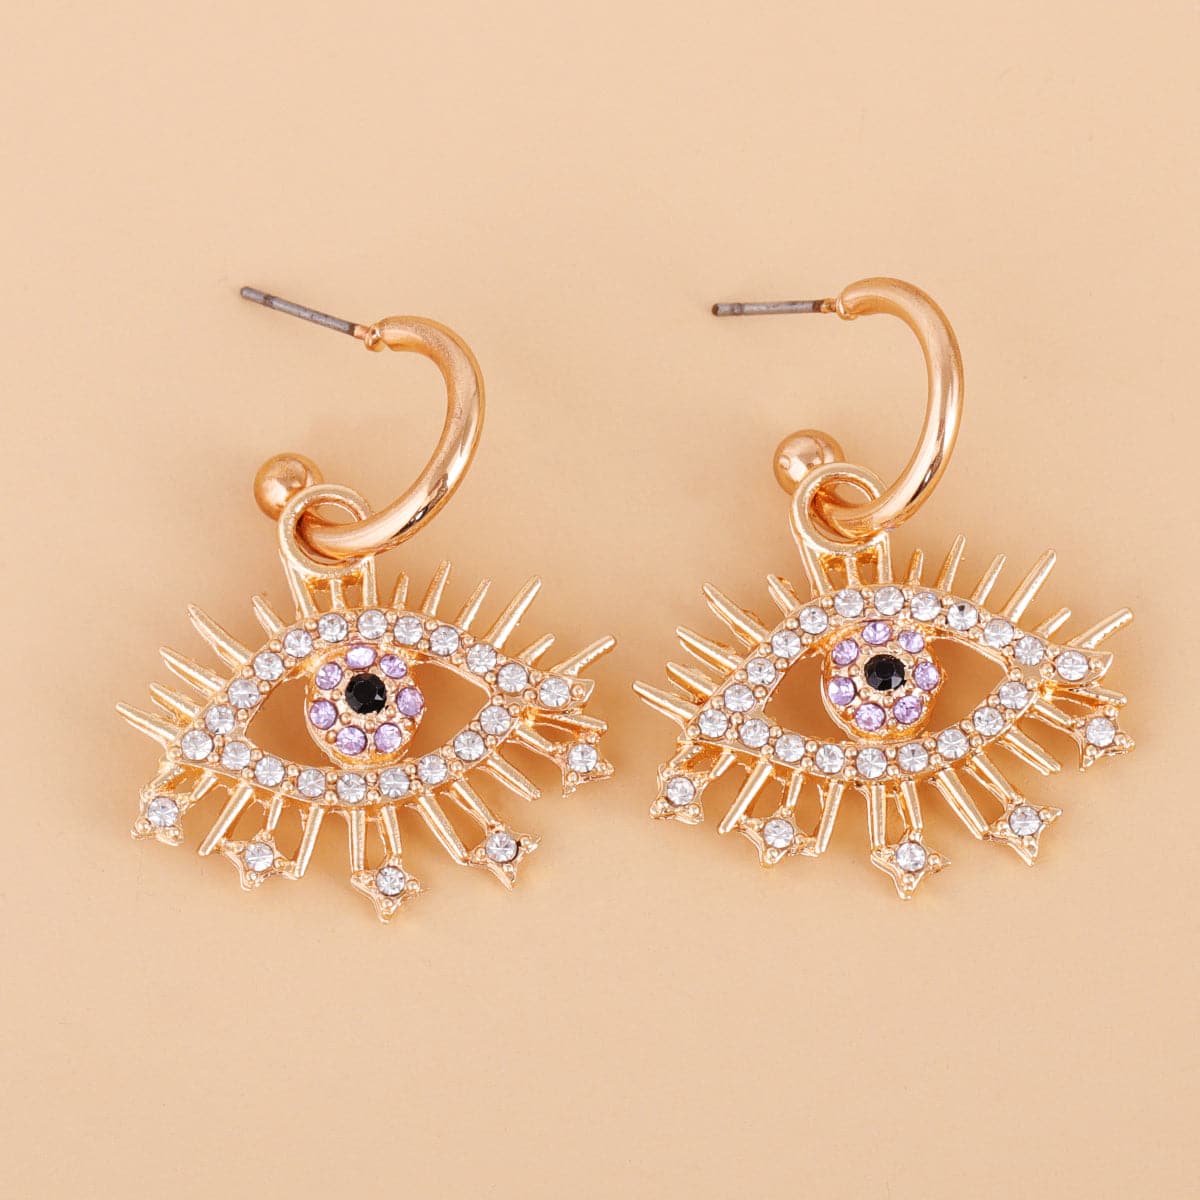 Cubic Zirconia & 18K Gold-Plated Eye Drop Earrings